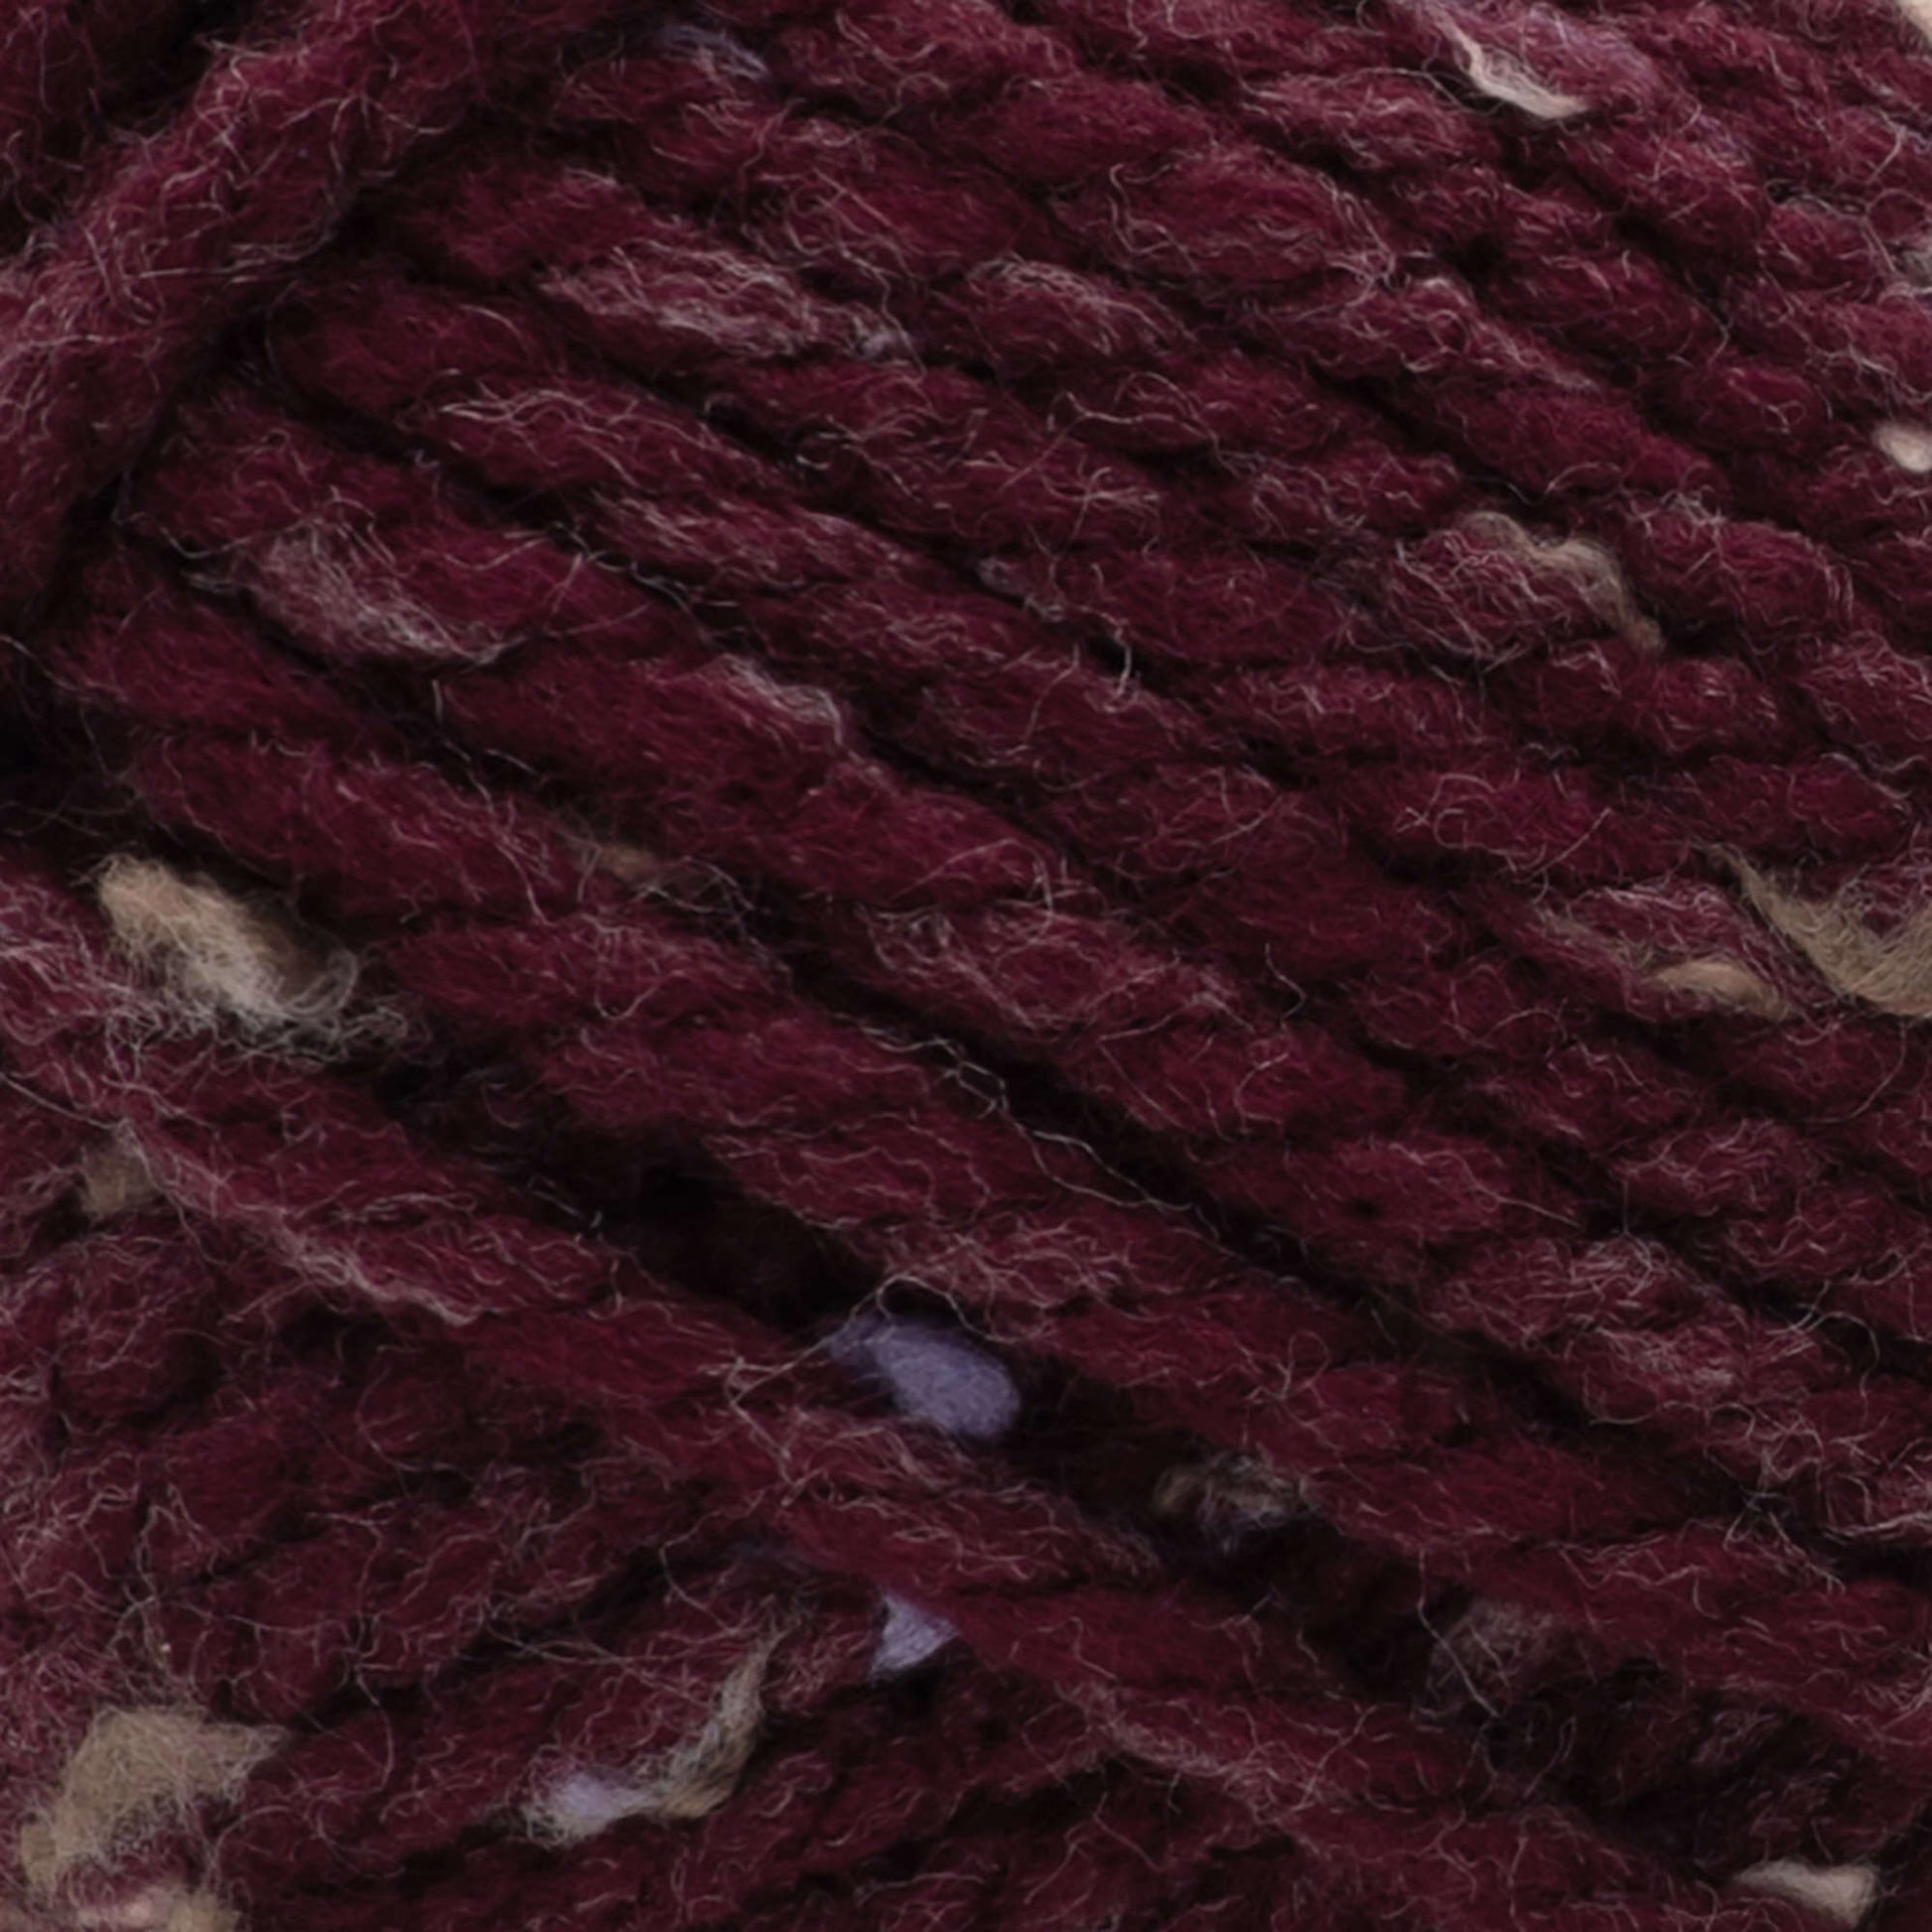 Bernat Softee Chunky Tweeds Yarn - Discontinued Shades